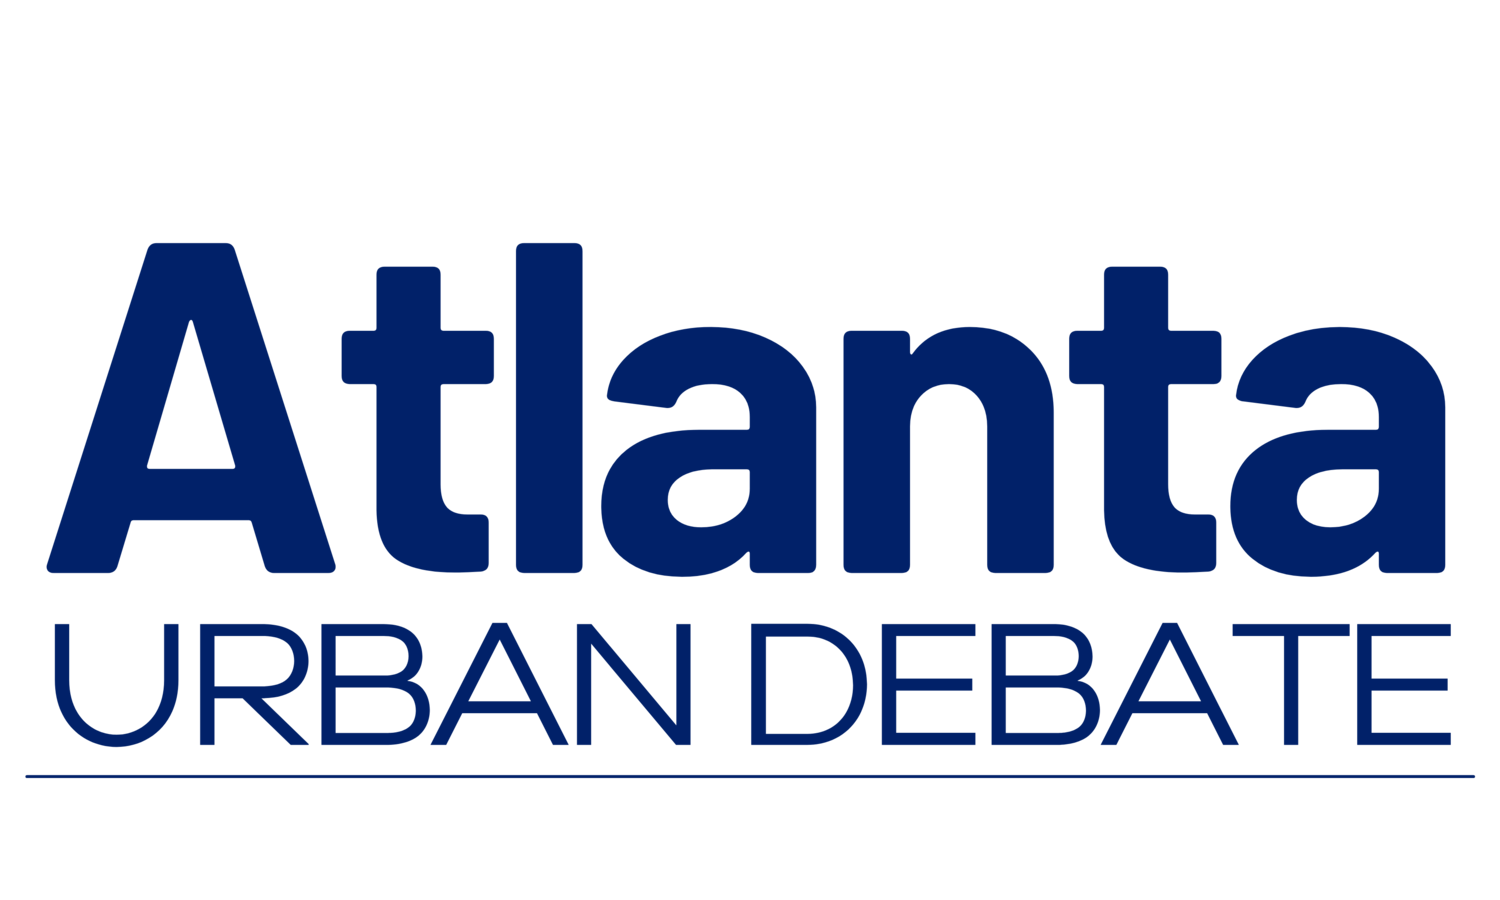 Atlanta Urban Debate League